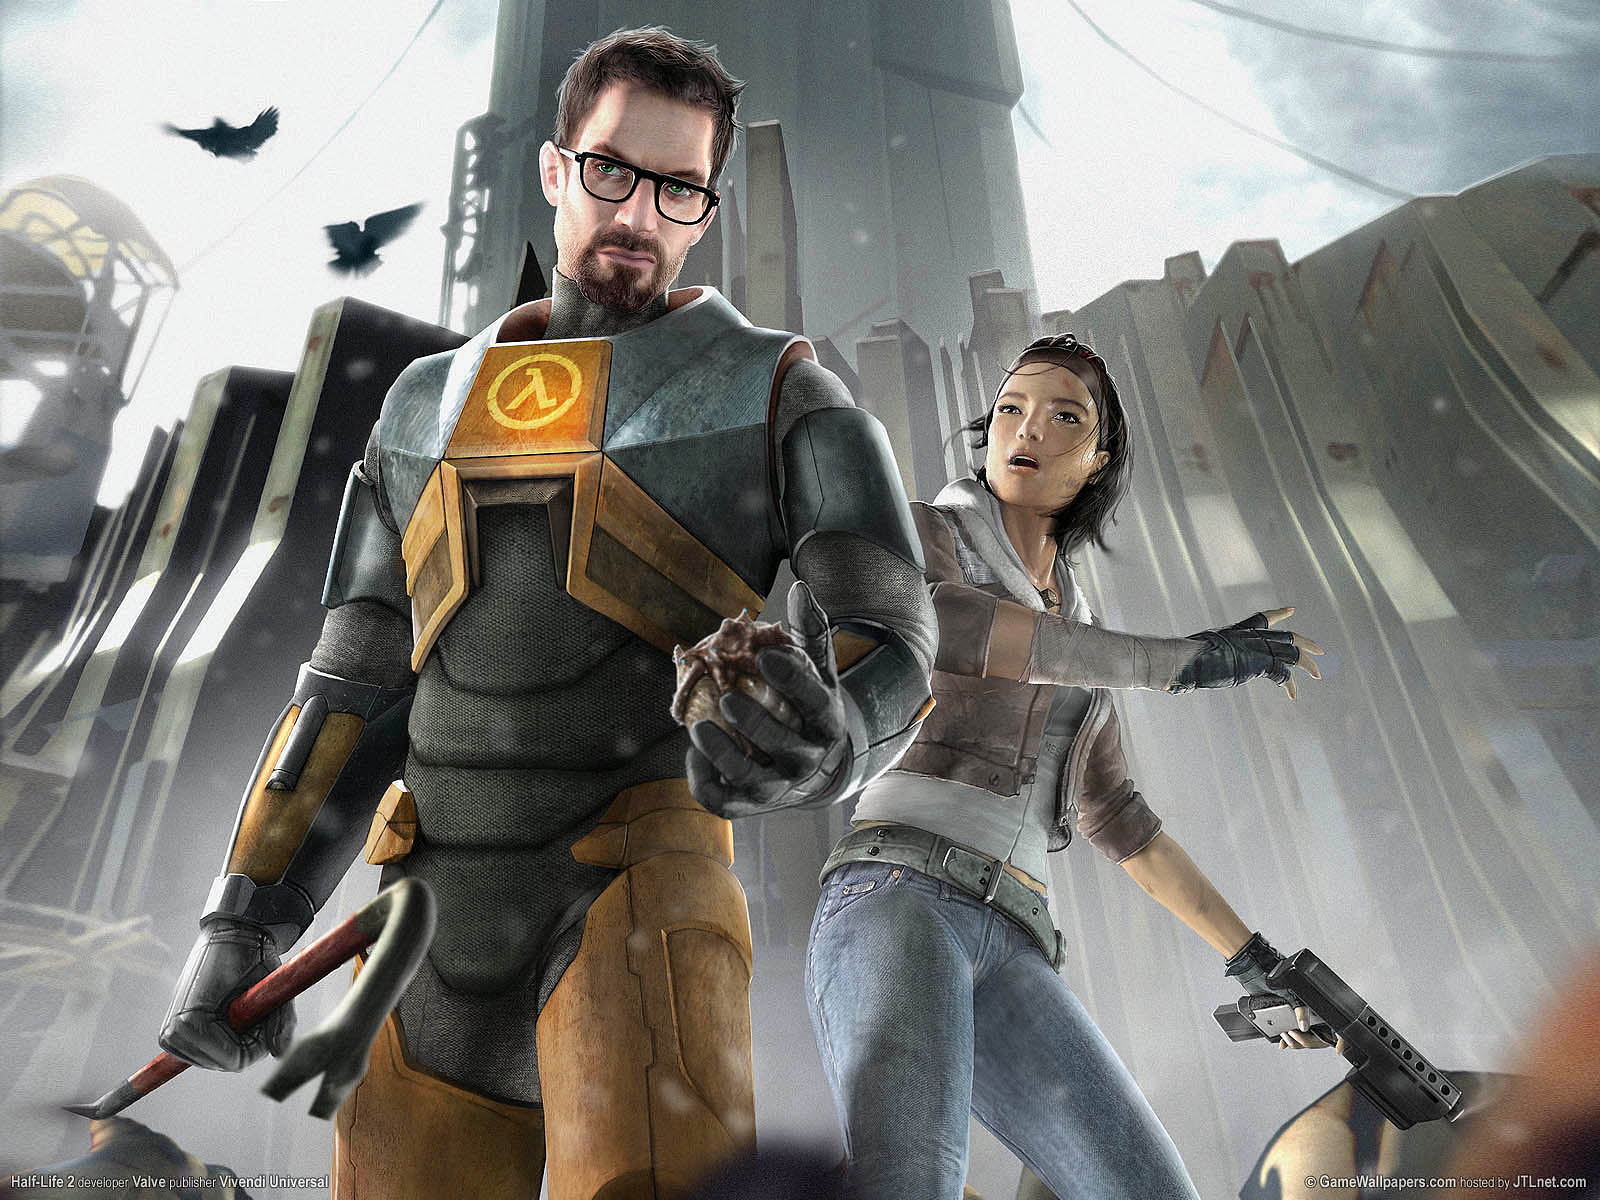 В най-лошия случай Half-Life 3 ще има съдбата на Duke Nukem Forever